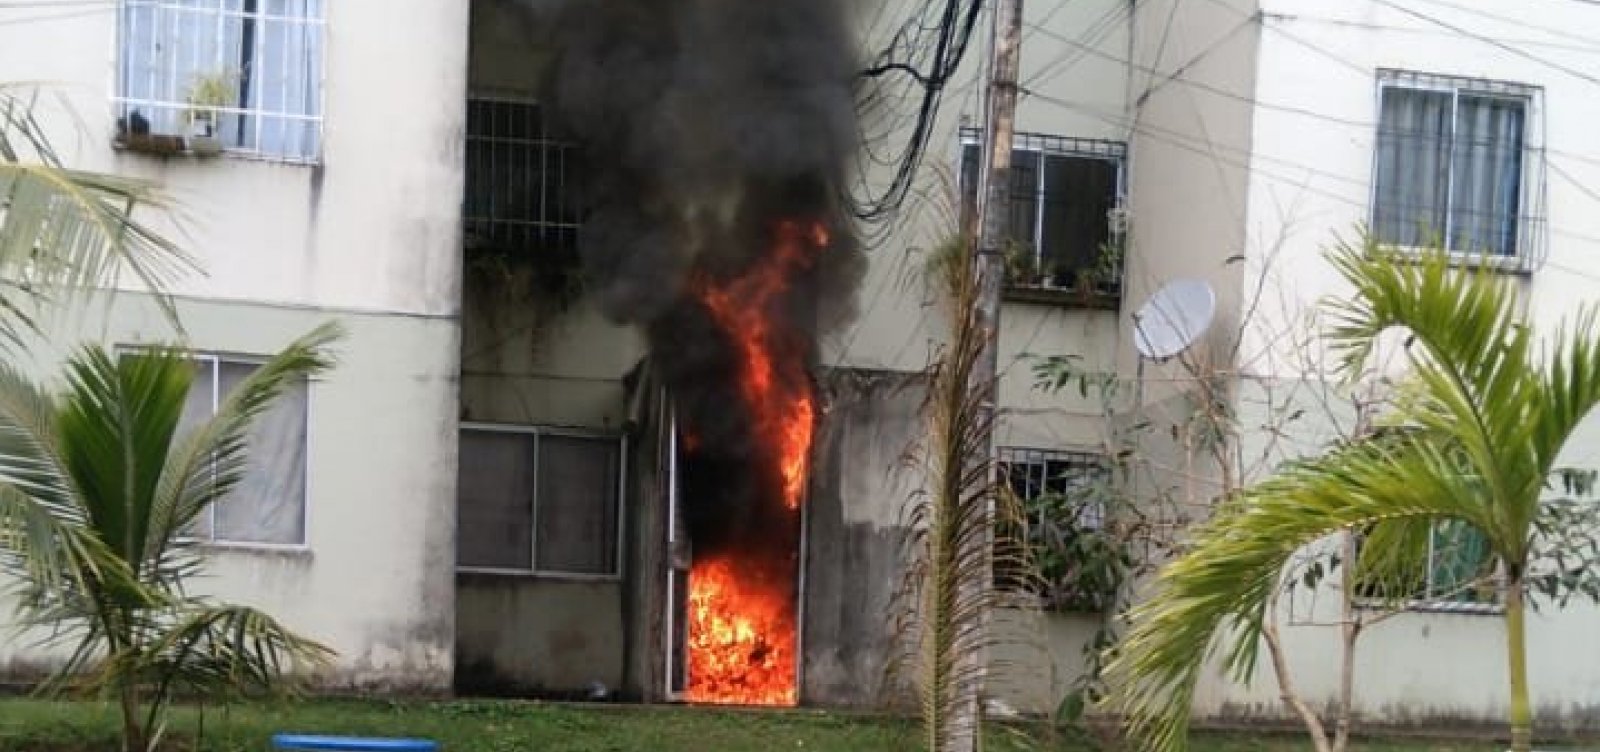 Incêndio em quadro de energia assusta moradores do Bosque das Bromélias 